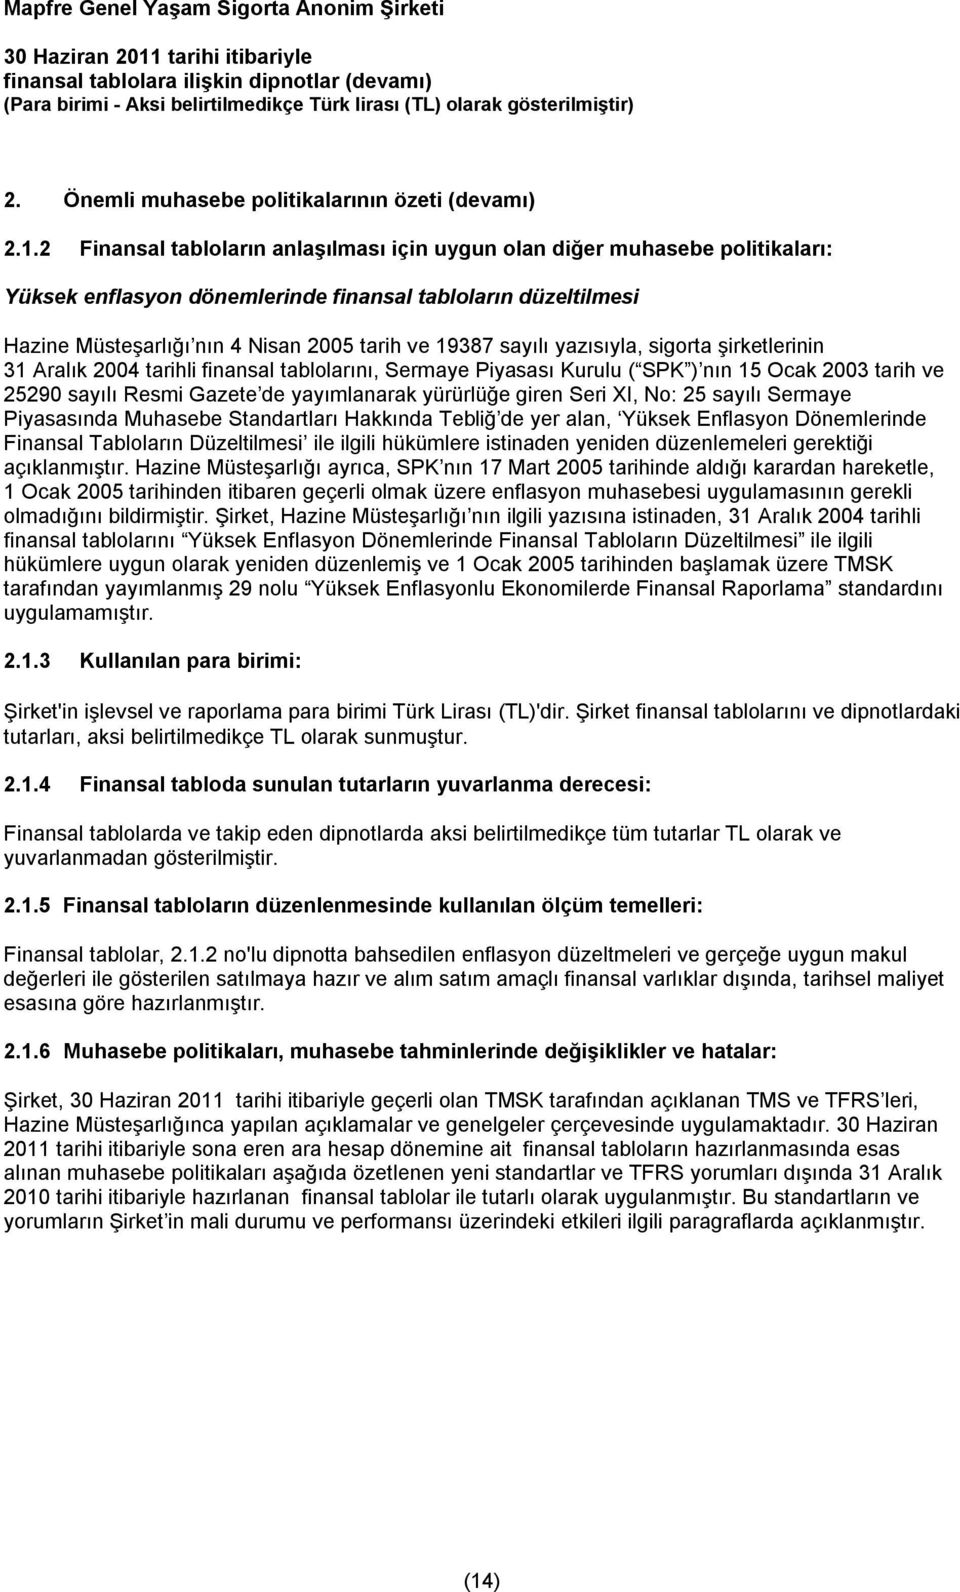 sayılı yazısıyla, sigorta şirketlerinin 31 Aralık 2004 tarihli finansal tablolarını, Sermaye Piyasası Kurulu ( SPK ) nın 15 Ocak 2003 tarih ve 25290 sayılı Resmi Gazete de yayımlanarak yürürlüğe